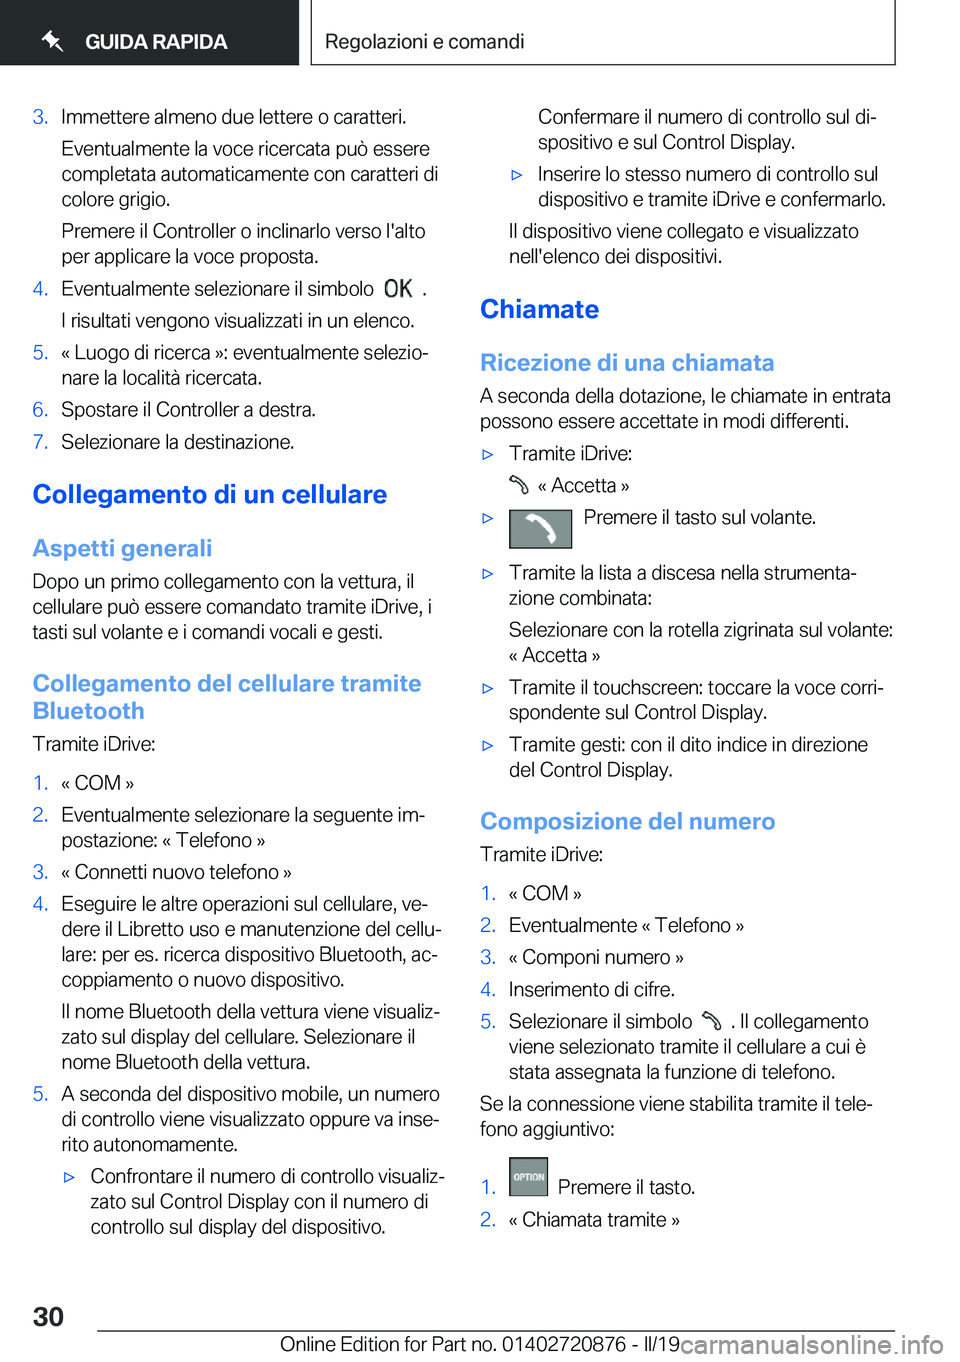 BMW X7 2019  Libretti Di Uso E manutenzione (in Italian) �3�.�I�m�m�e�t�t�e�r�e��a�l�m�e�n�o��d�u�e��l�e�t�t�e�r�e��o��c�a�r�a�t�t�e�r�i�.�E�v�e�n�t�u�a�l�m�e�n�t�e��l�a��v�o�c�e��r�i�c�e�r�c�a�t�a��p�u�